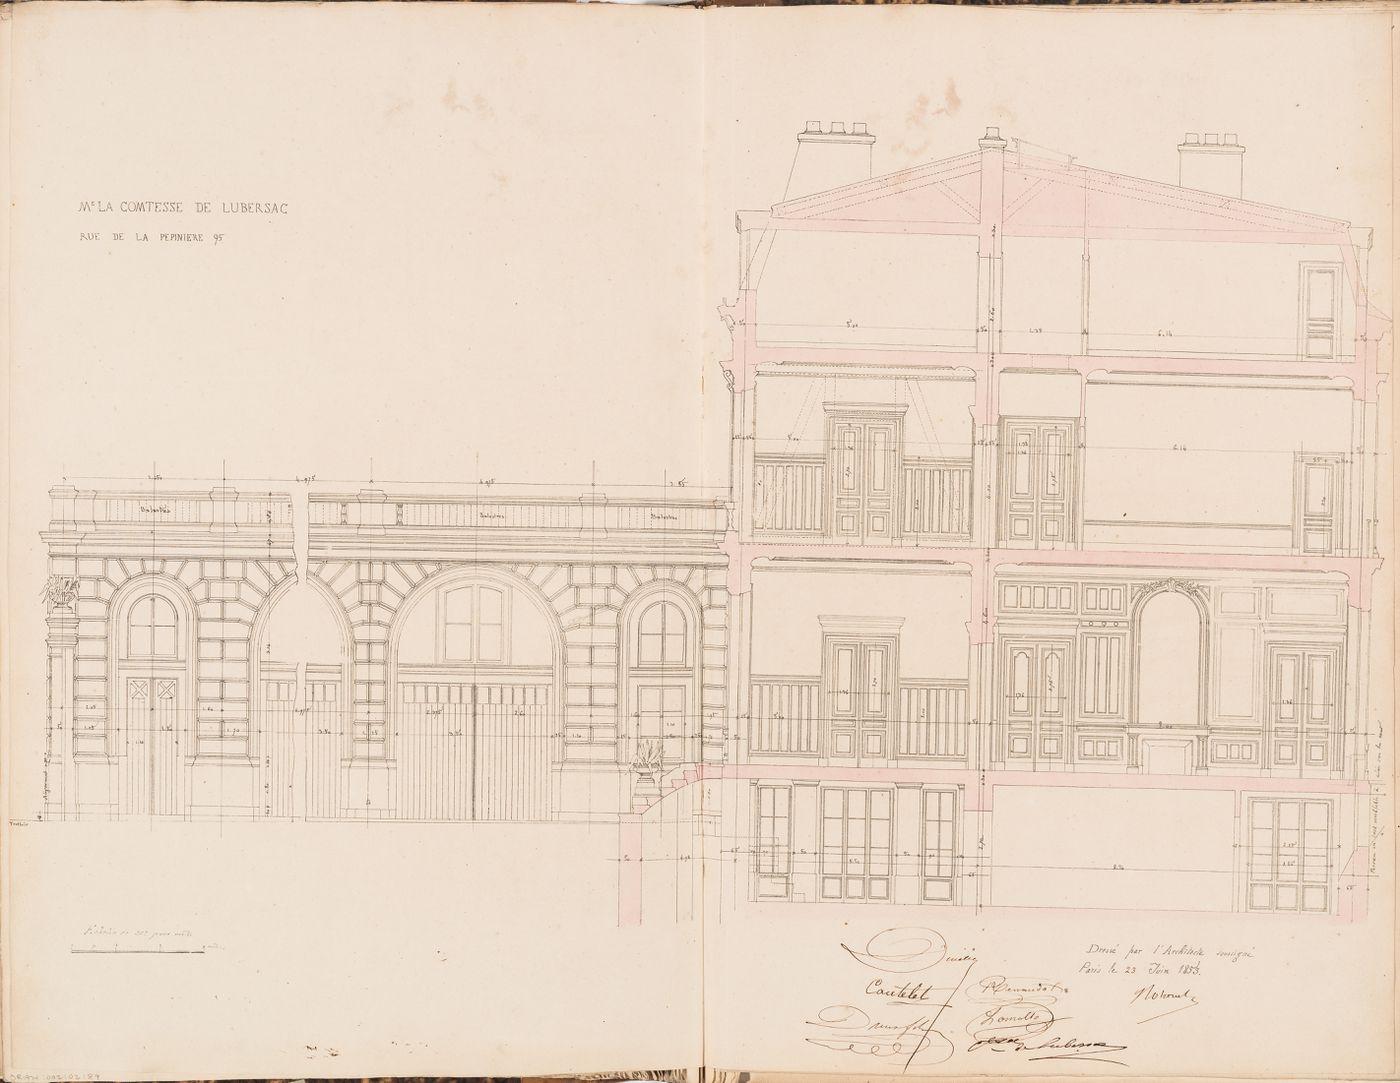 Contract drawing for a house for Madame la comtesse de Lubersac, 95 rue de la Pépinière, Paris: Longitudinal section through the courtyard